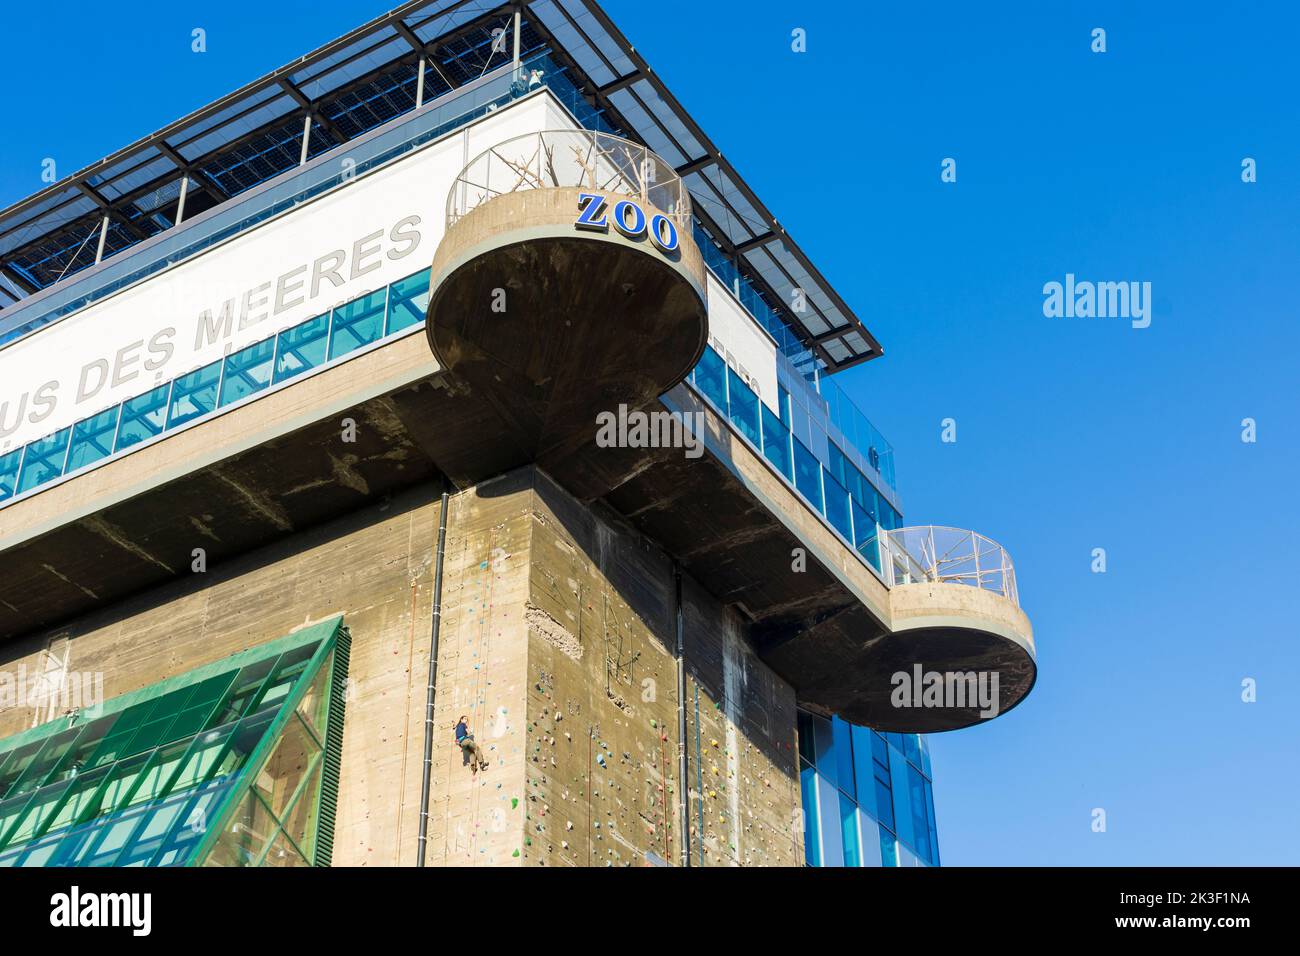 Wien, Wien: Öffentliches Aquarium des Hauses des Meeres im ehemaligen Flakenturm, Kletterwand 06. Mariahilf, Wien, Österreich Stockfoto